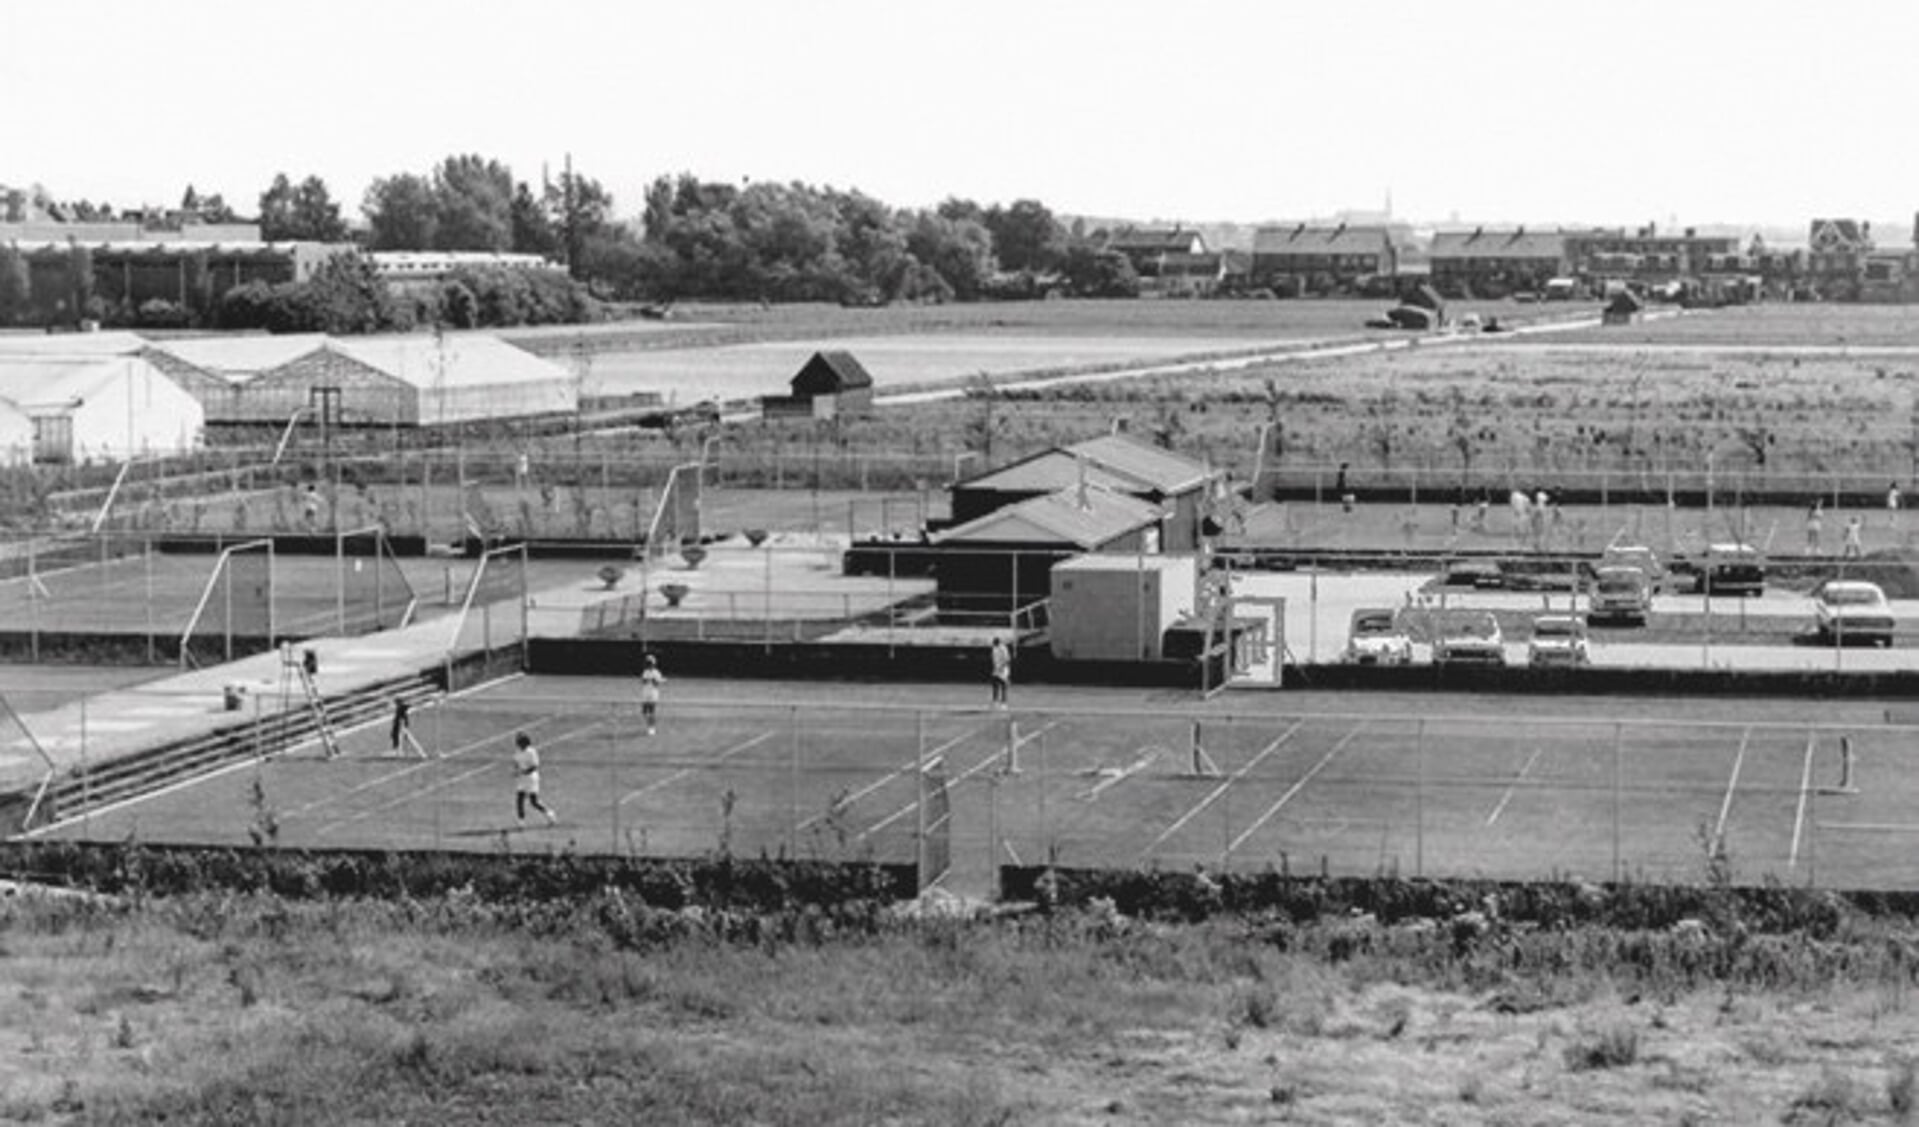 Fotobijschrift: De tennisbanen van HTC in de jaren ‘70. Foto: Archief SVvOH.